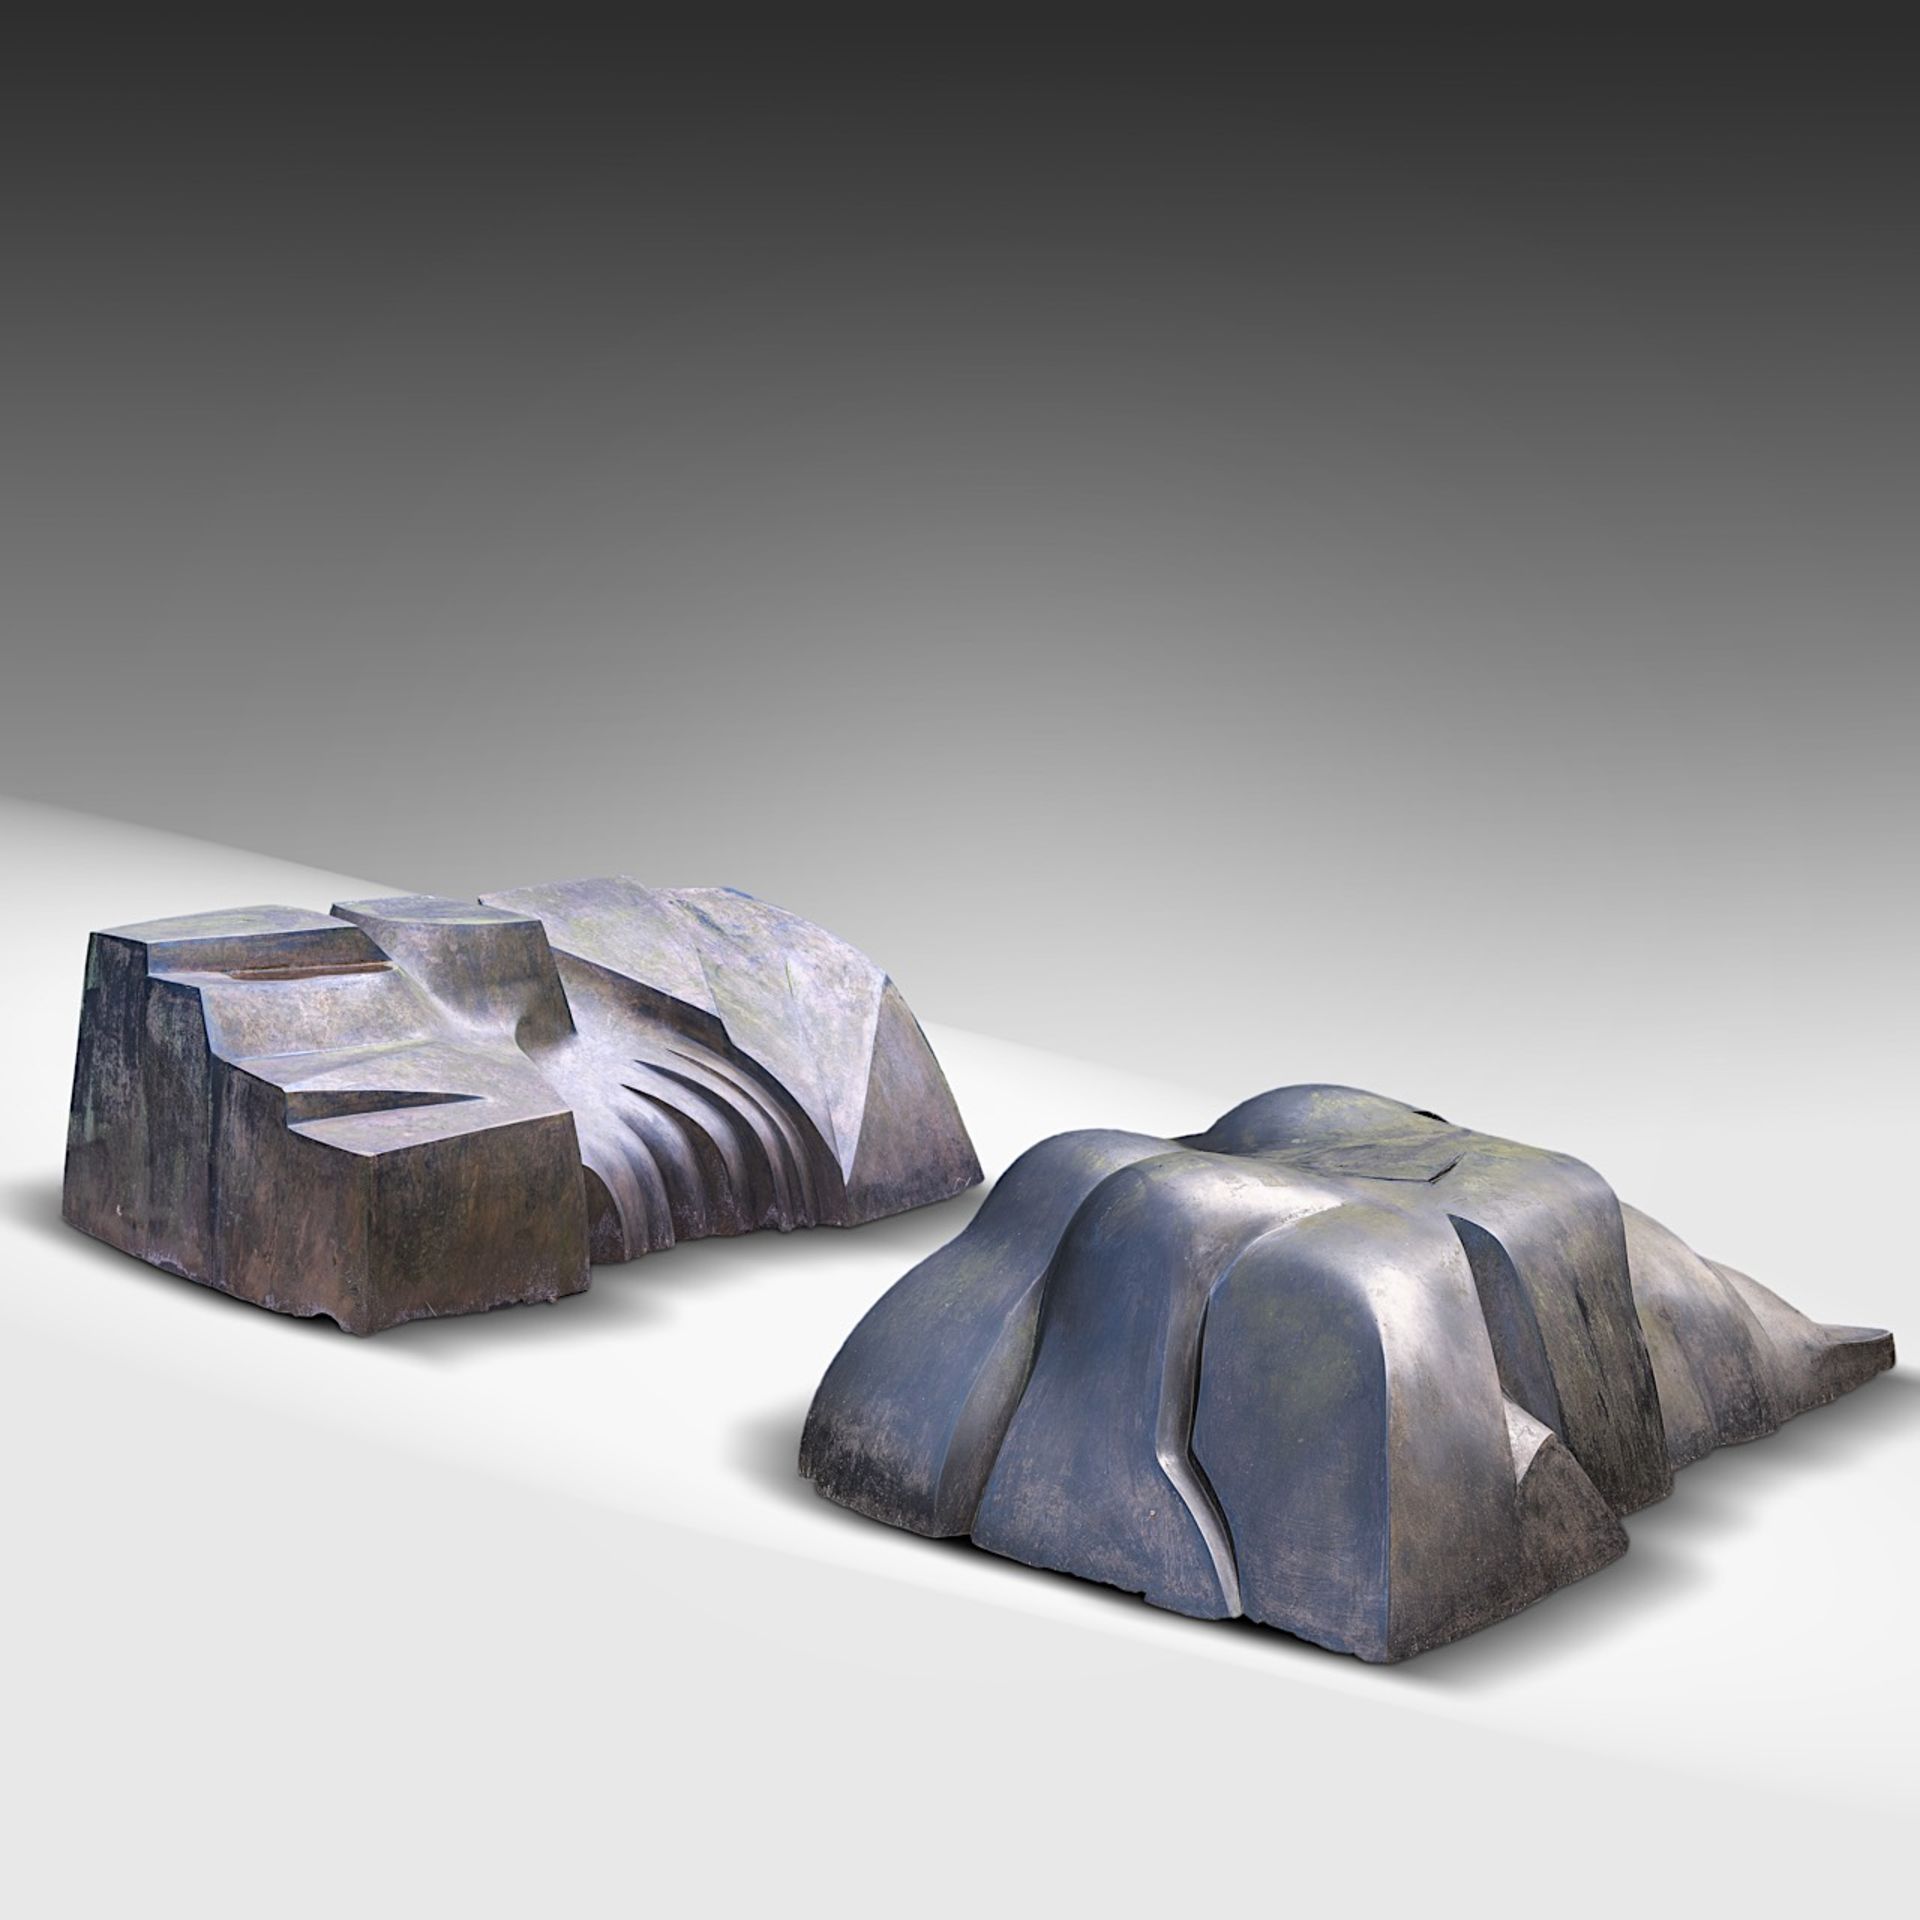 Pol Spilliaert (1935-2023), 'De schone slaapster', bronze patinated polyester, 1986-1989